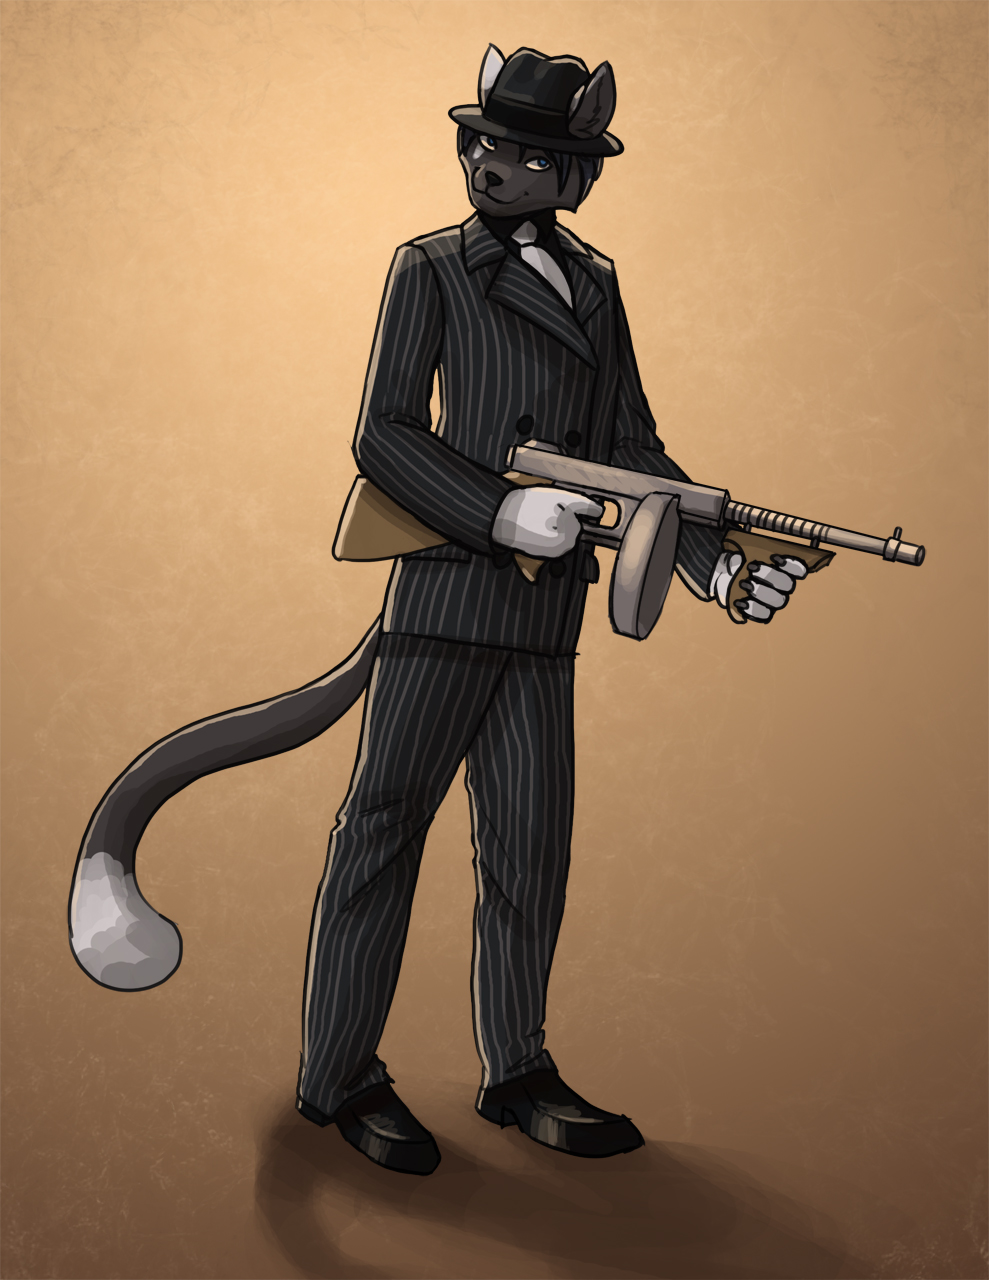 Kitten_noir Commission 2